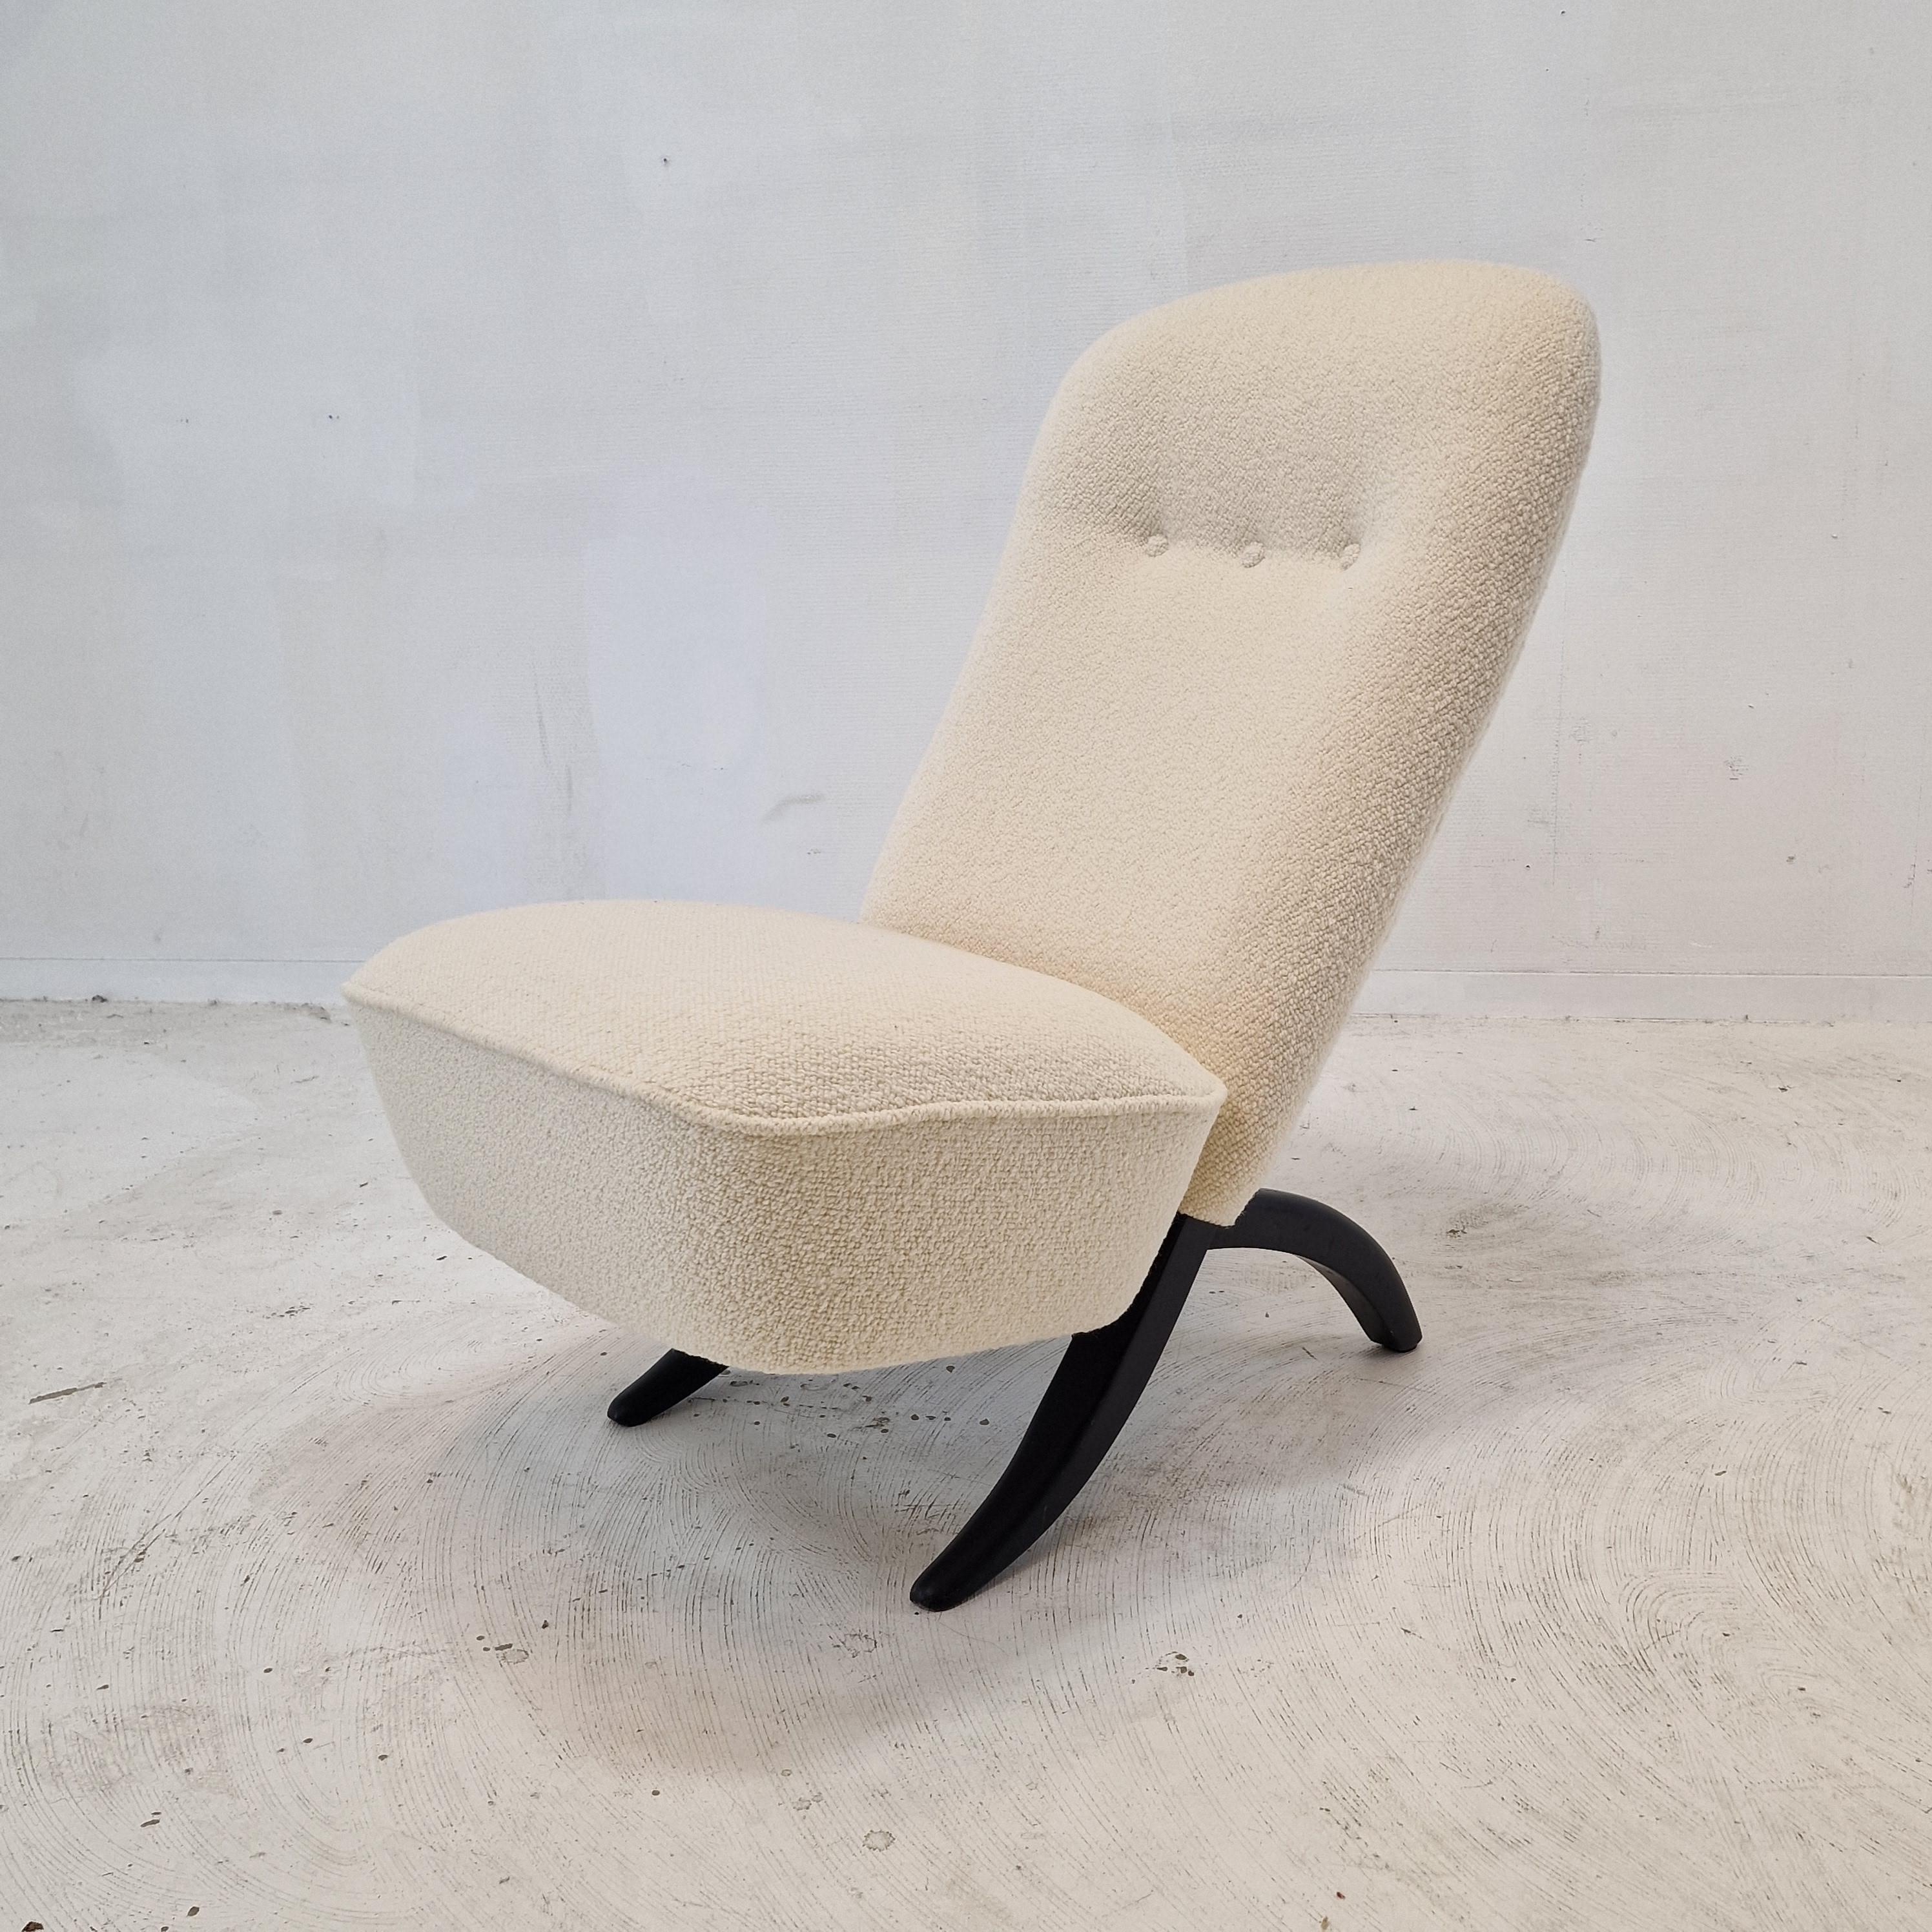 Superbe chaise Congo moderne du milieu du siècle, conçue par Theo Ruth pour Artifort.
Design/One emblématique des années 50.

Le dossier et l'assise sont deux pièces distinctes qui s'assemblent facilement et en font une chaise unique.

La chaise est